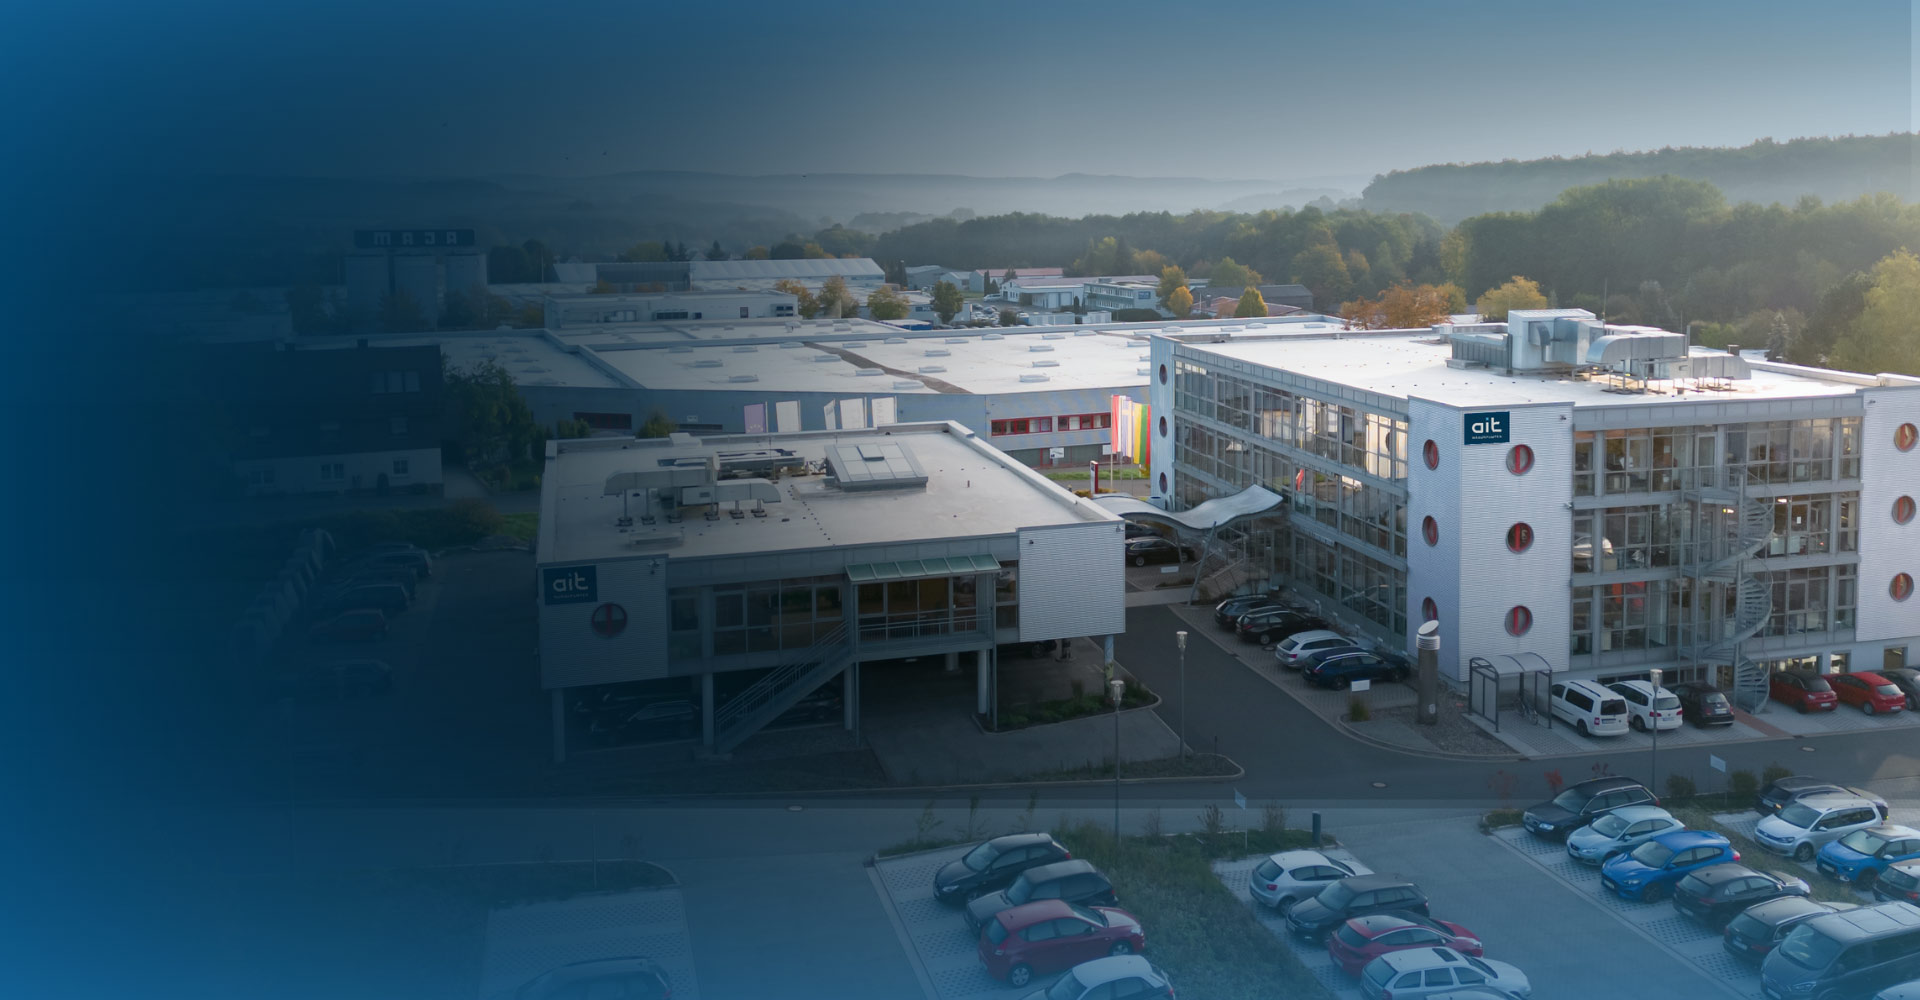 Luftaufnahme der ait Firmenzentrale in Kasendorf